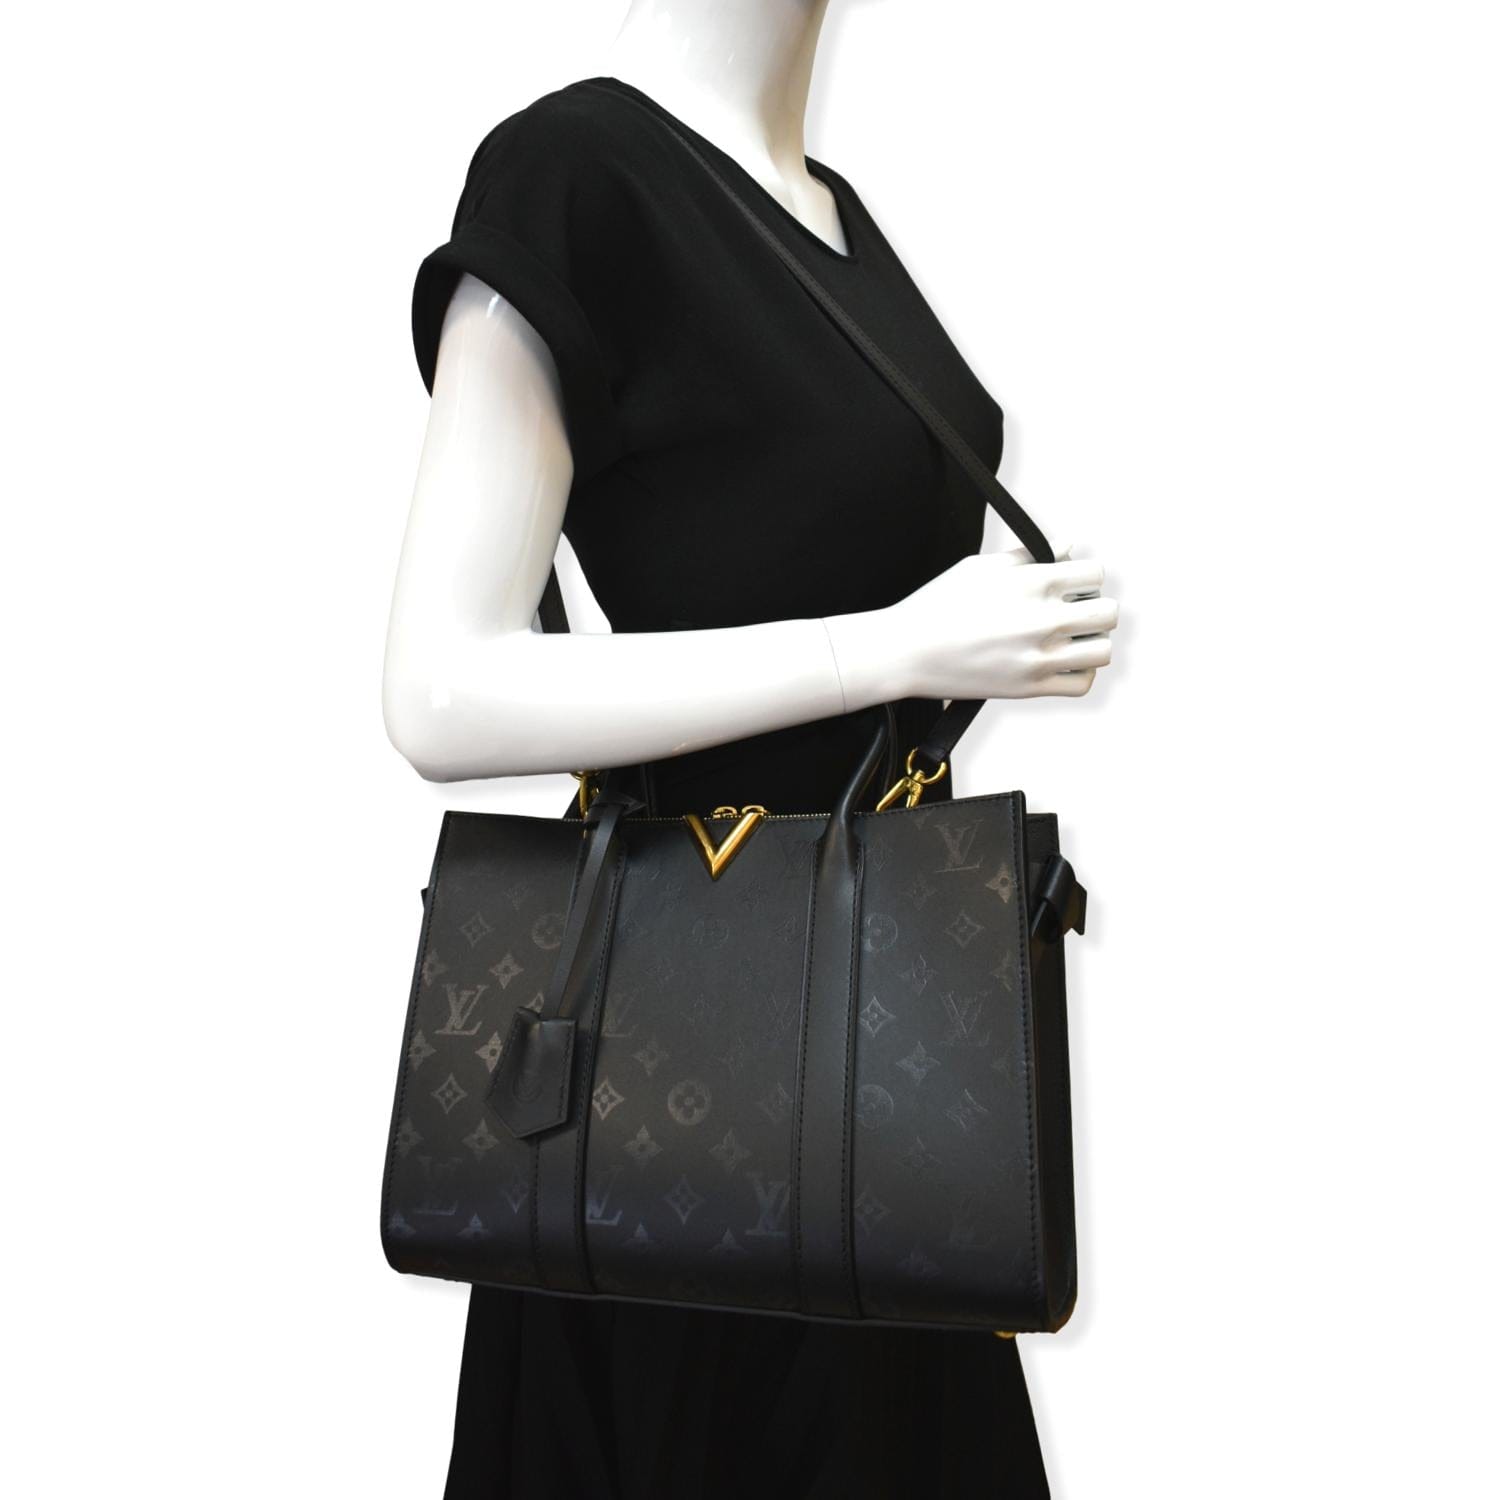 An Authentic LV Louis Vuitton Large Shoulder Tote Bag